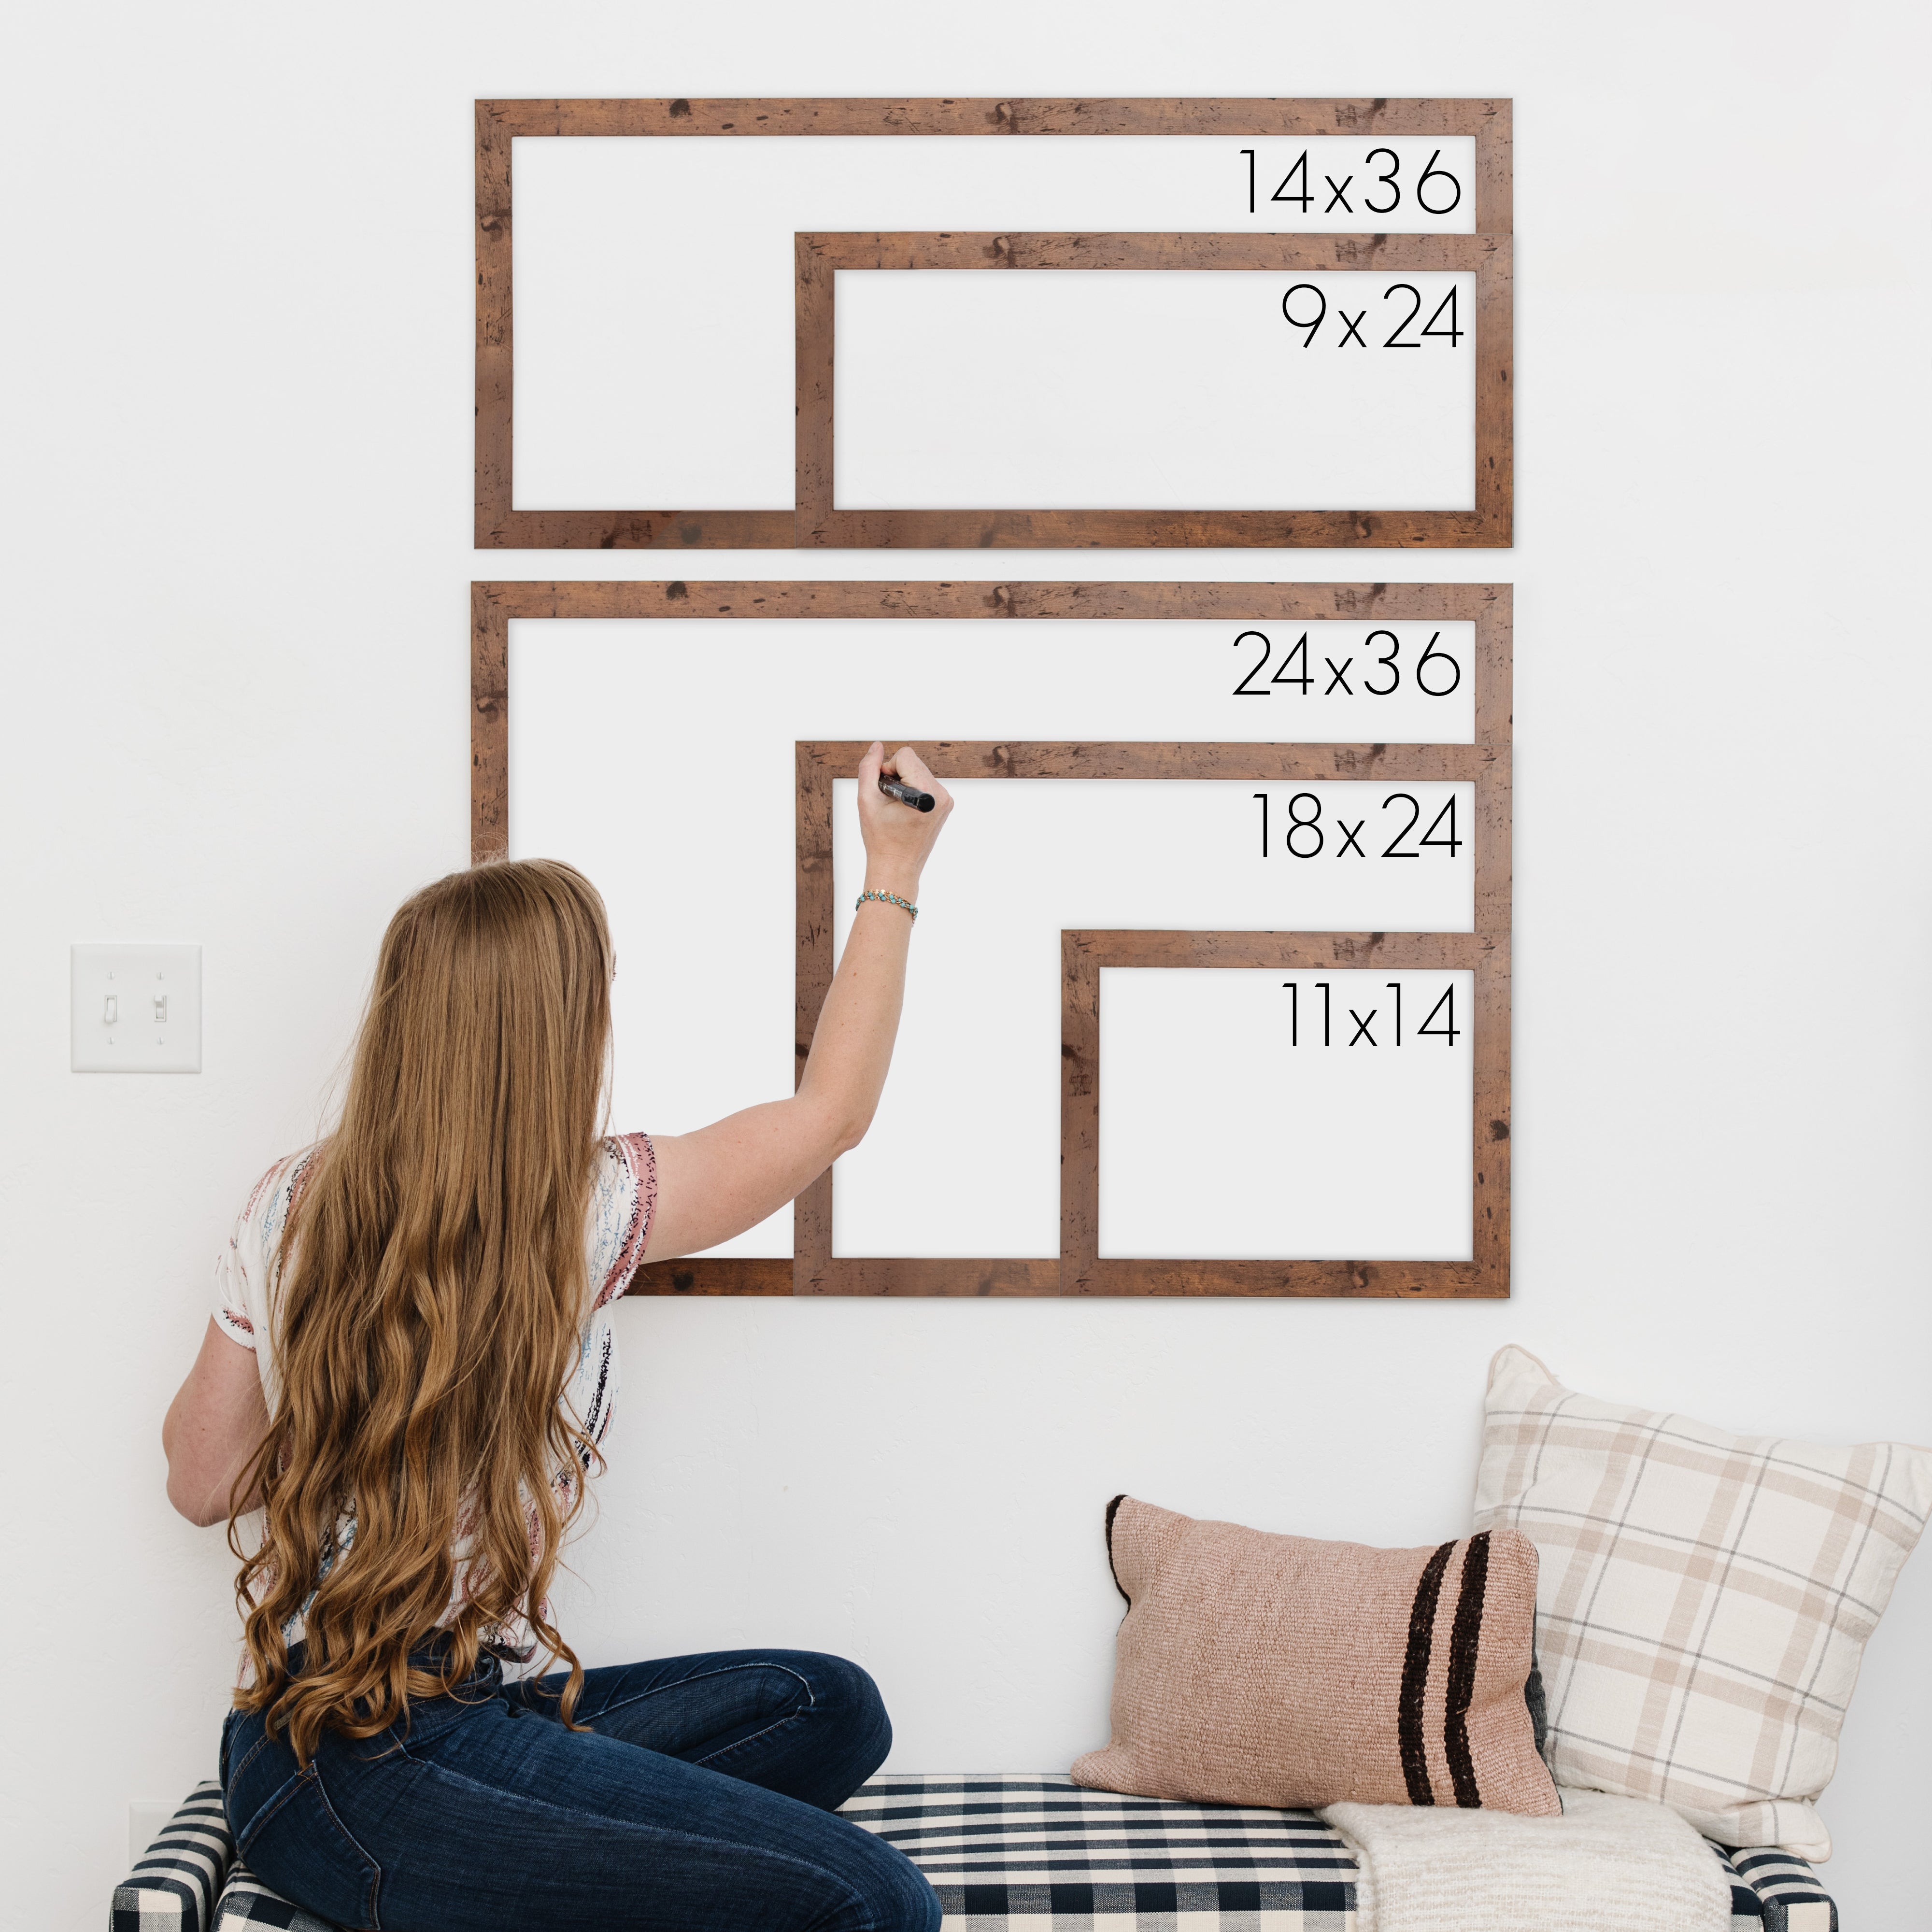 Monthly Framed Whiteboard Calendar | Horizontal Dwyer